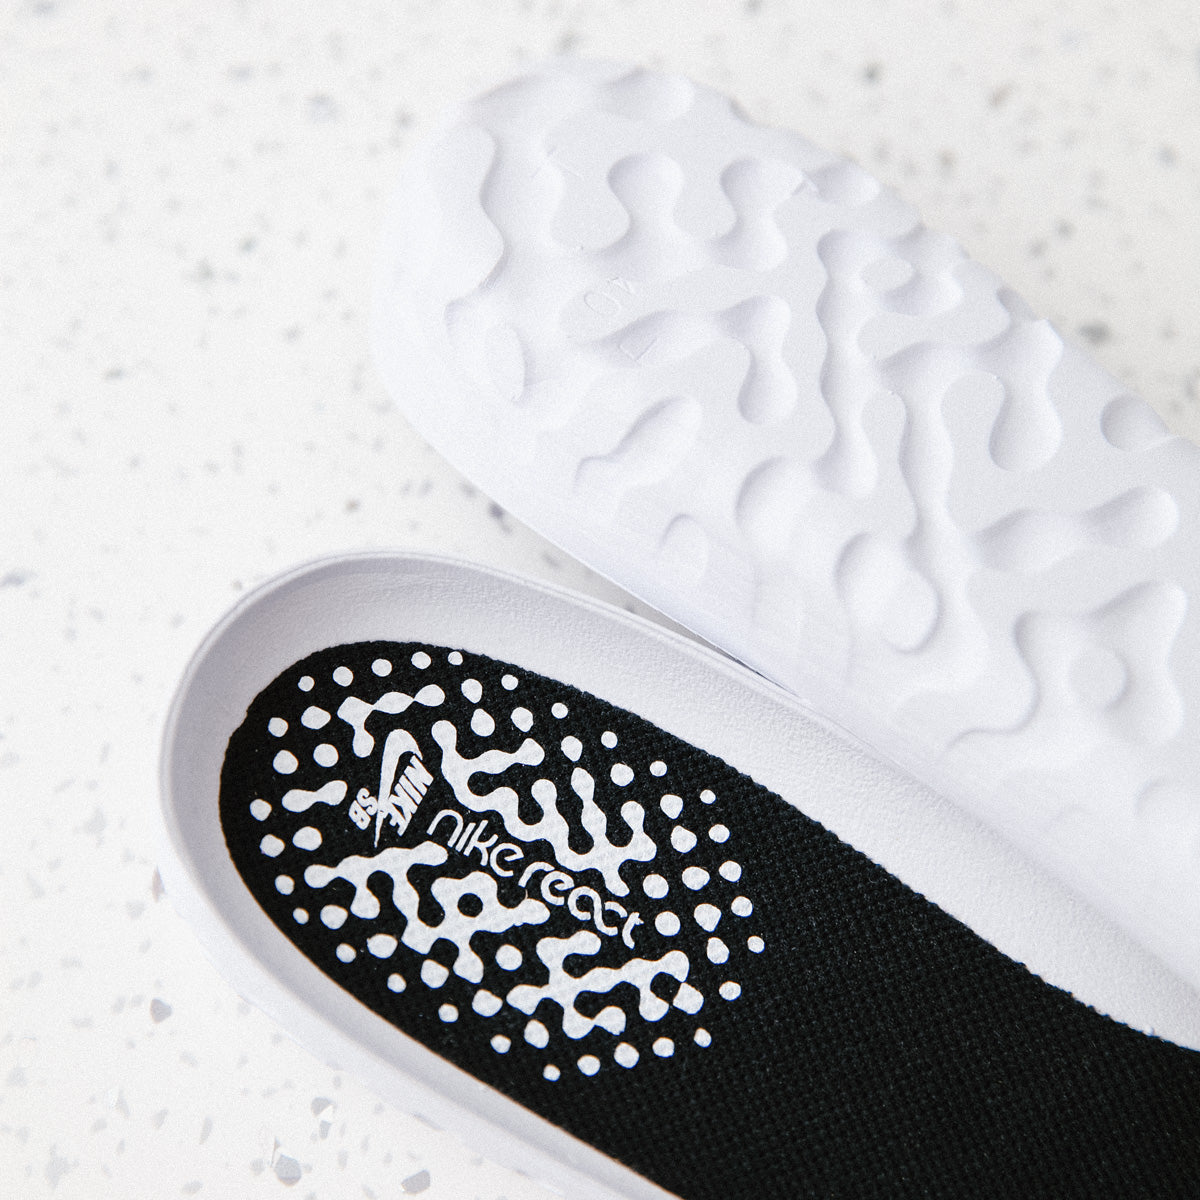 Introducing The Nike SB Bruin React | Flatspot